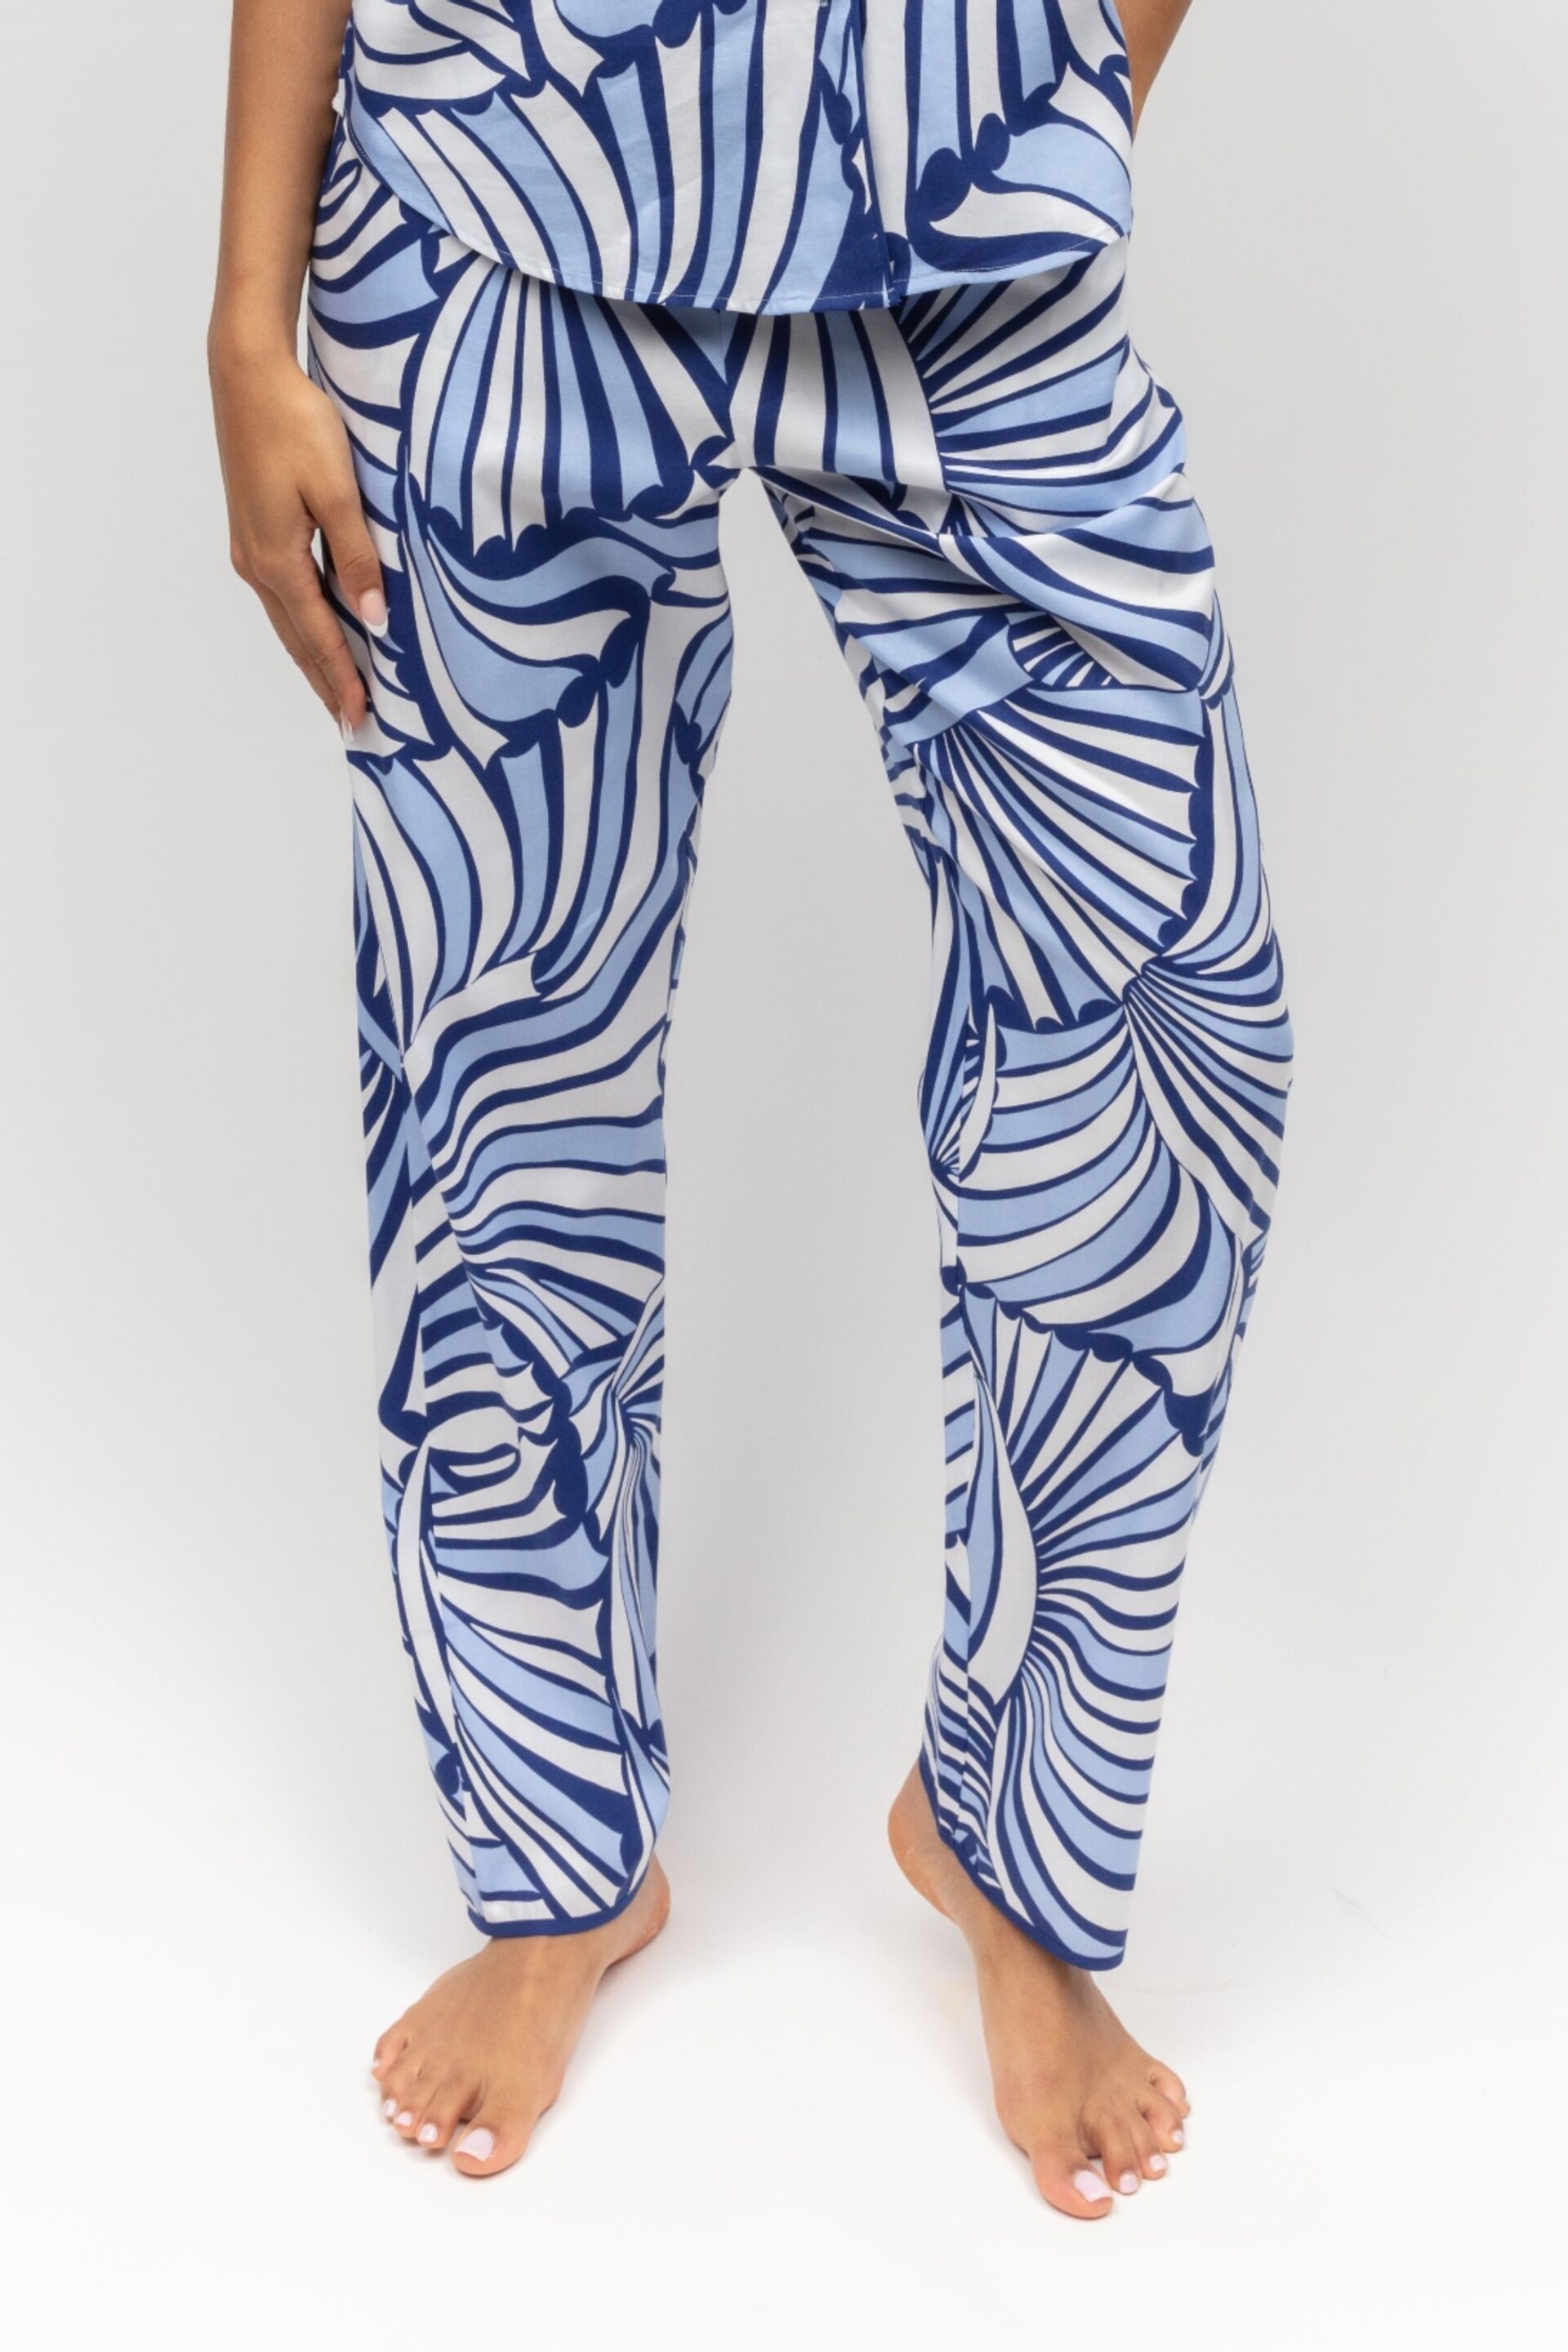 Cyberjammies Blue Printed Pyjama Bottoms - Image 1 of 4